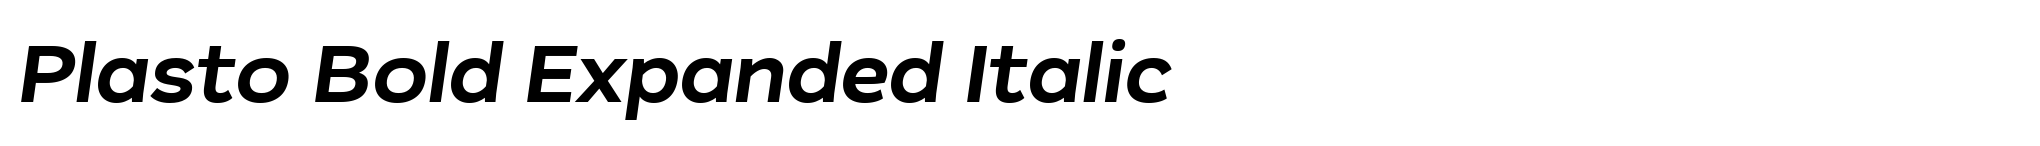 Plasto Bold Expanded Italic image